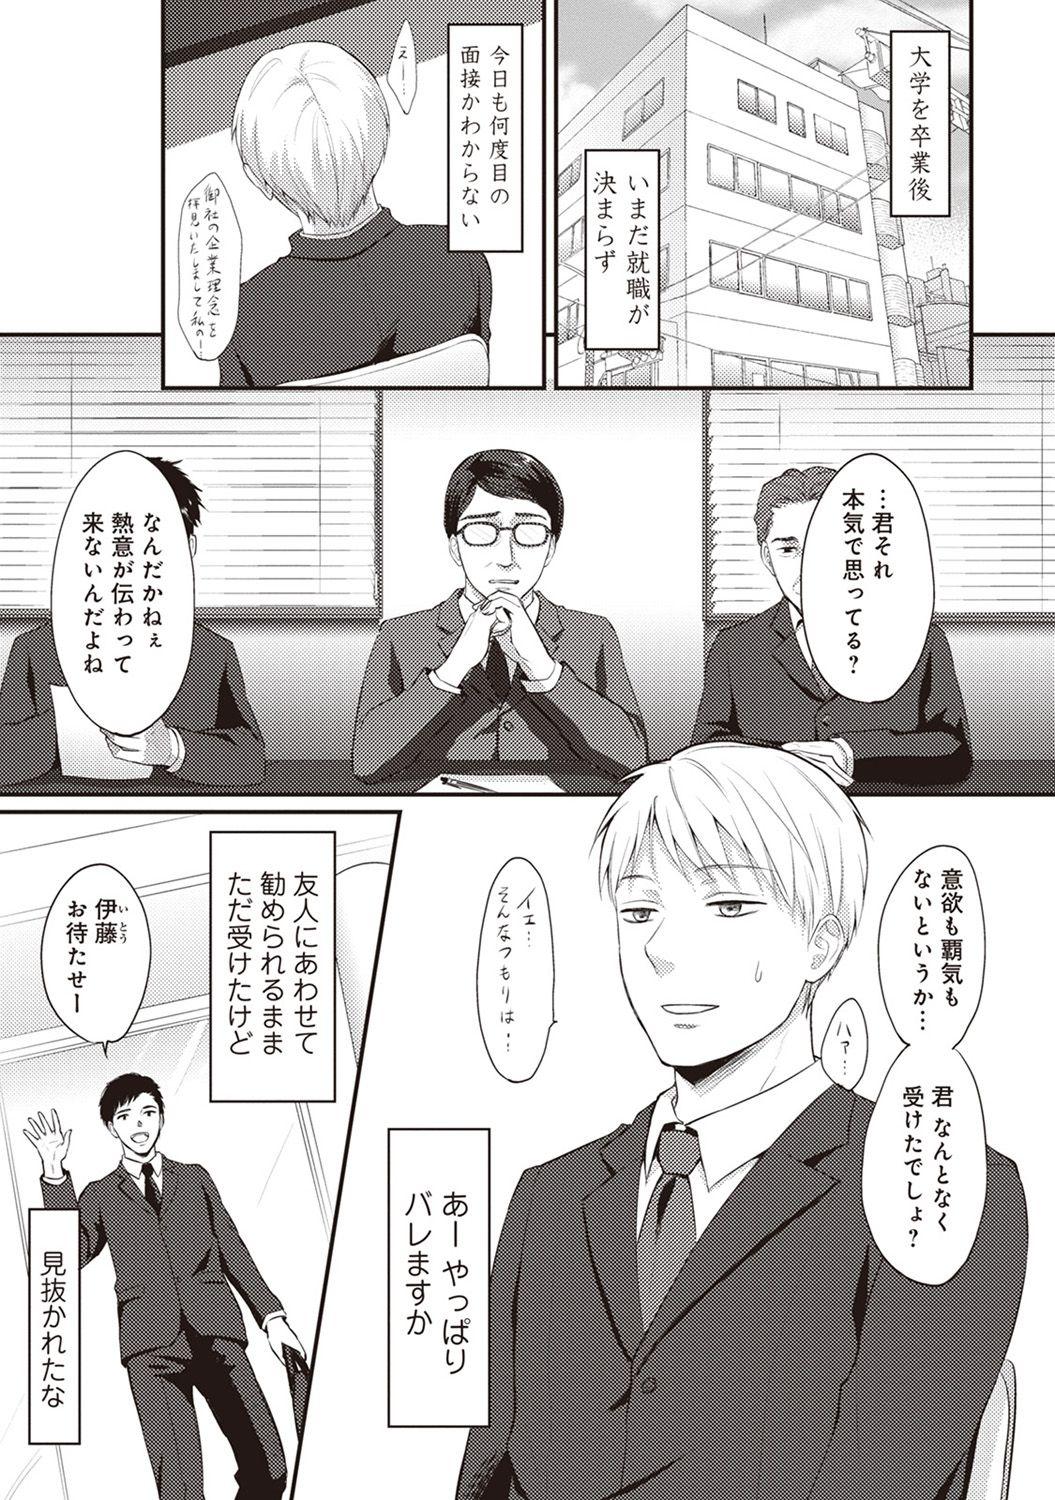 Travesti Zesshokukei danshi seiyoku wo shiru ep1~7 Blackmail - Page 2